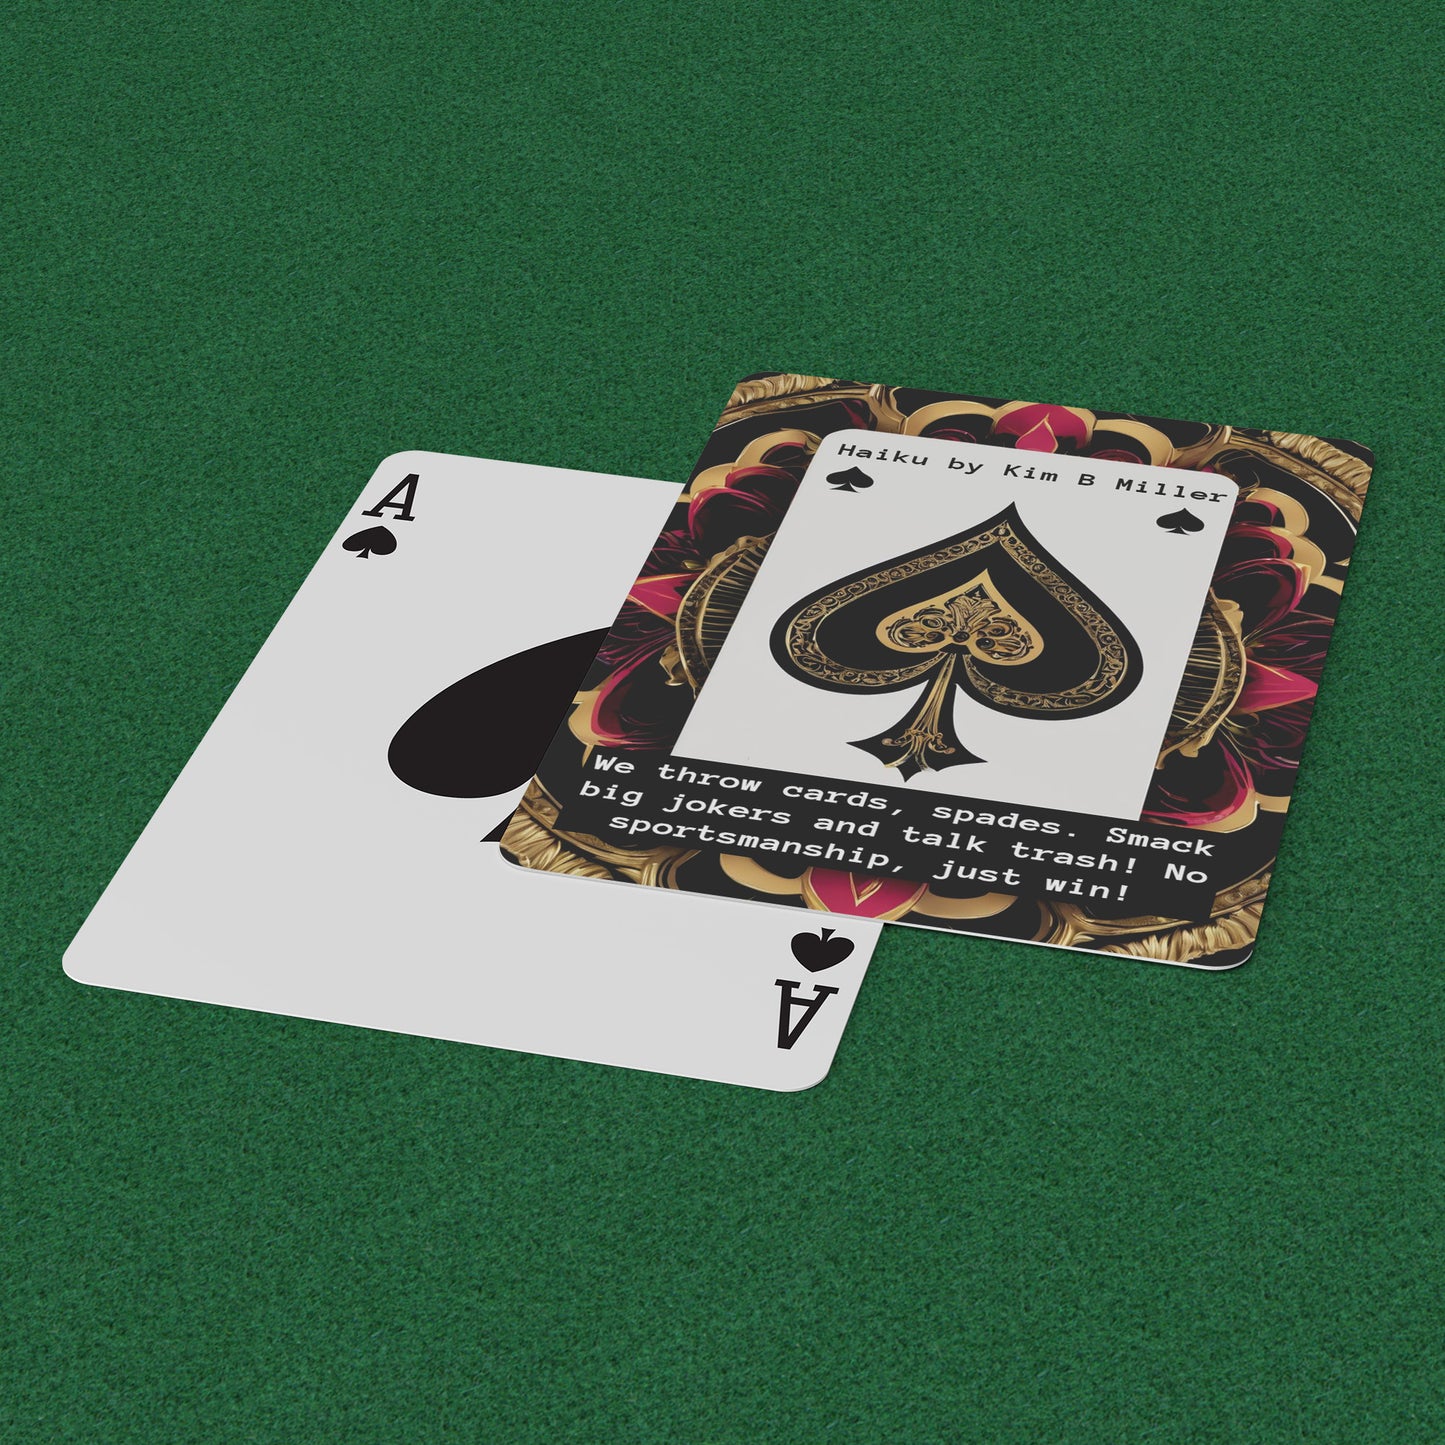 Spades Haiku: Playing Cards